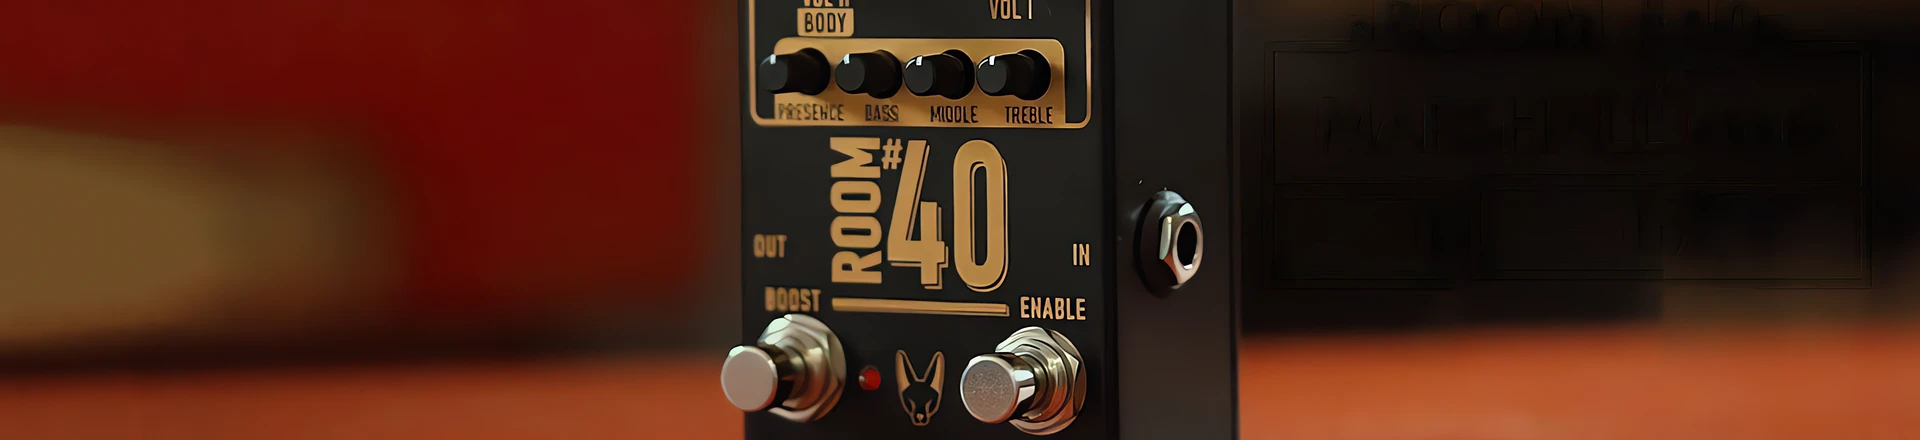 Room #40 to małe plexi w kostce